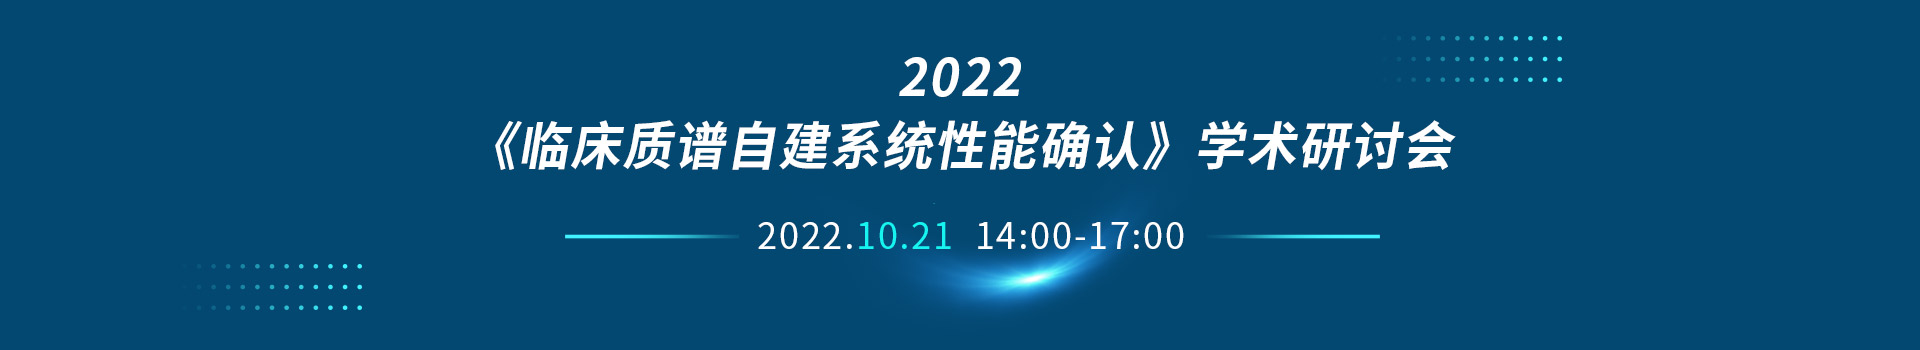 2022《临床质谱自建系统性能确认》学术研讨会